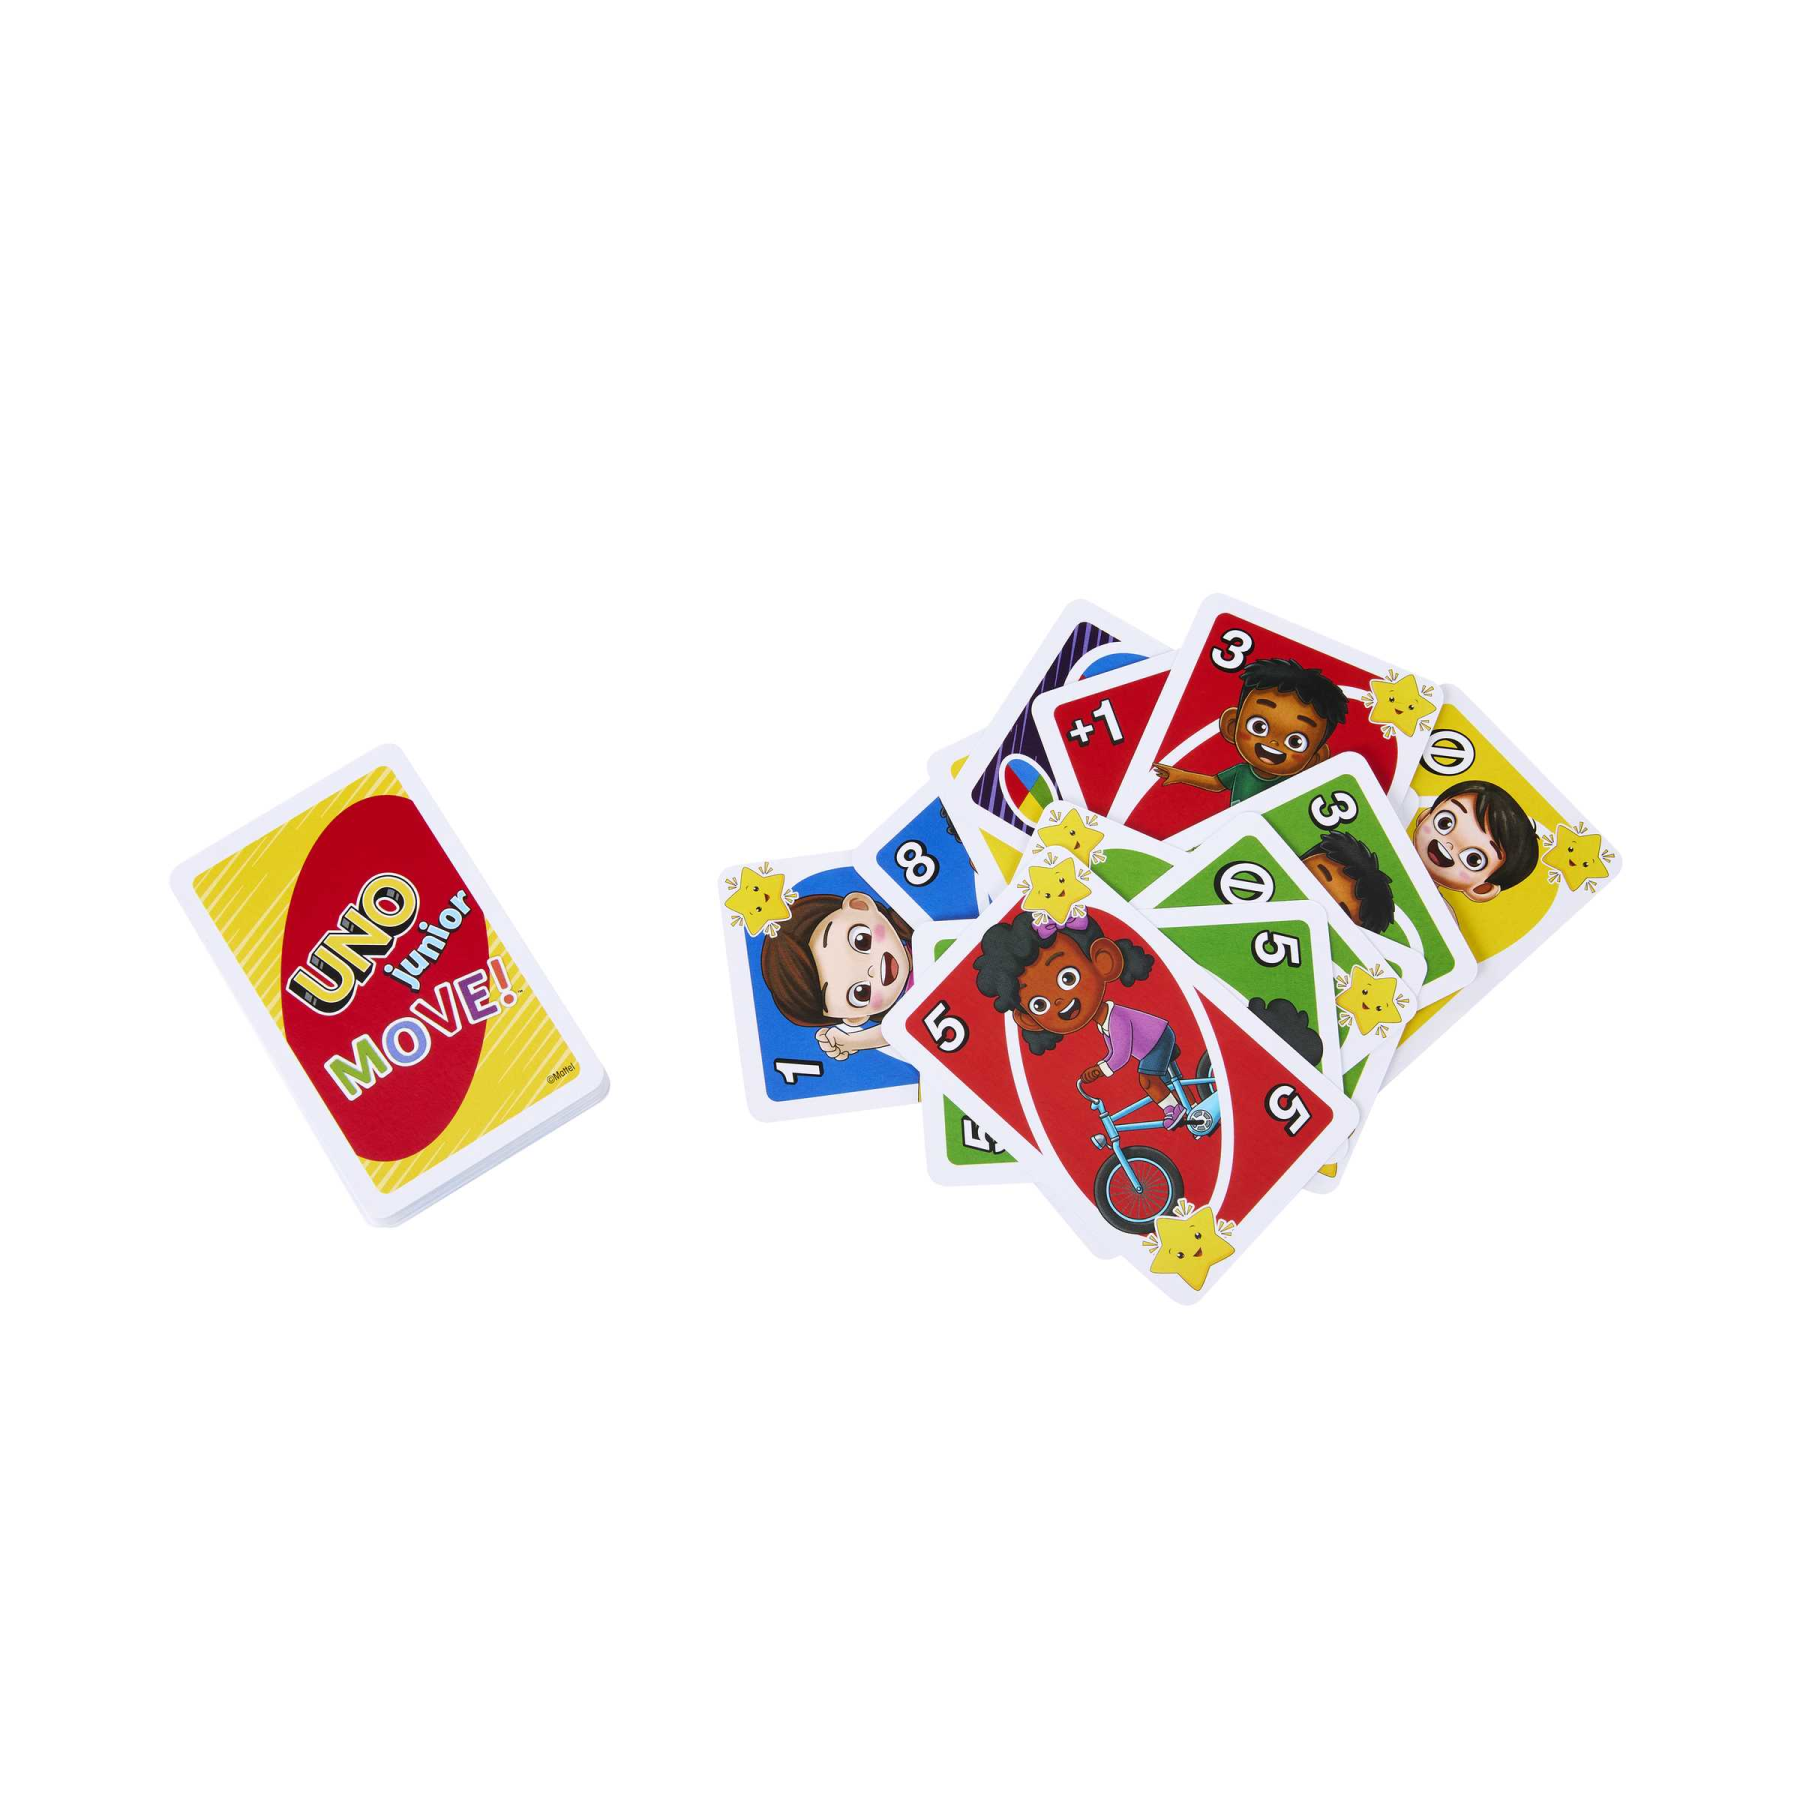 Mattel games - uno junior move!, gioco di carte per bambini per